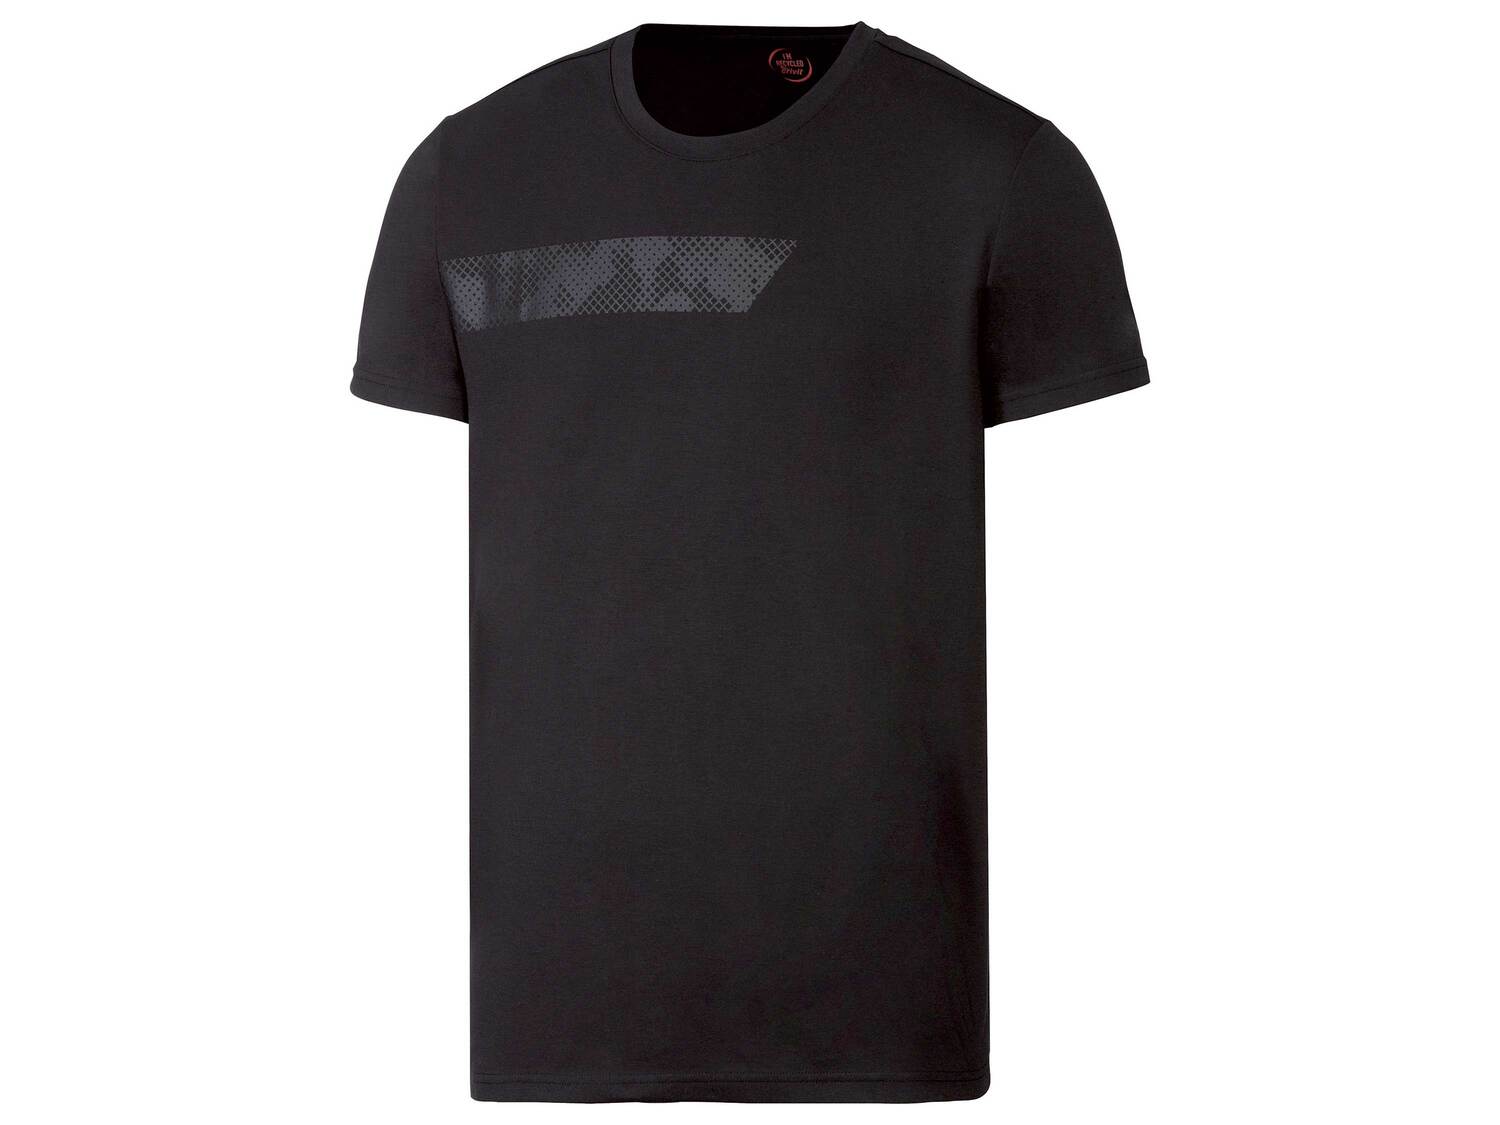 T-shirt technique , le prix 3.99 € 
- Du S au XL selon modèle
- Ex. 75 % polyester ...